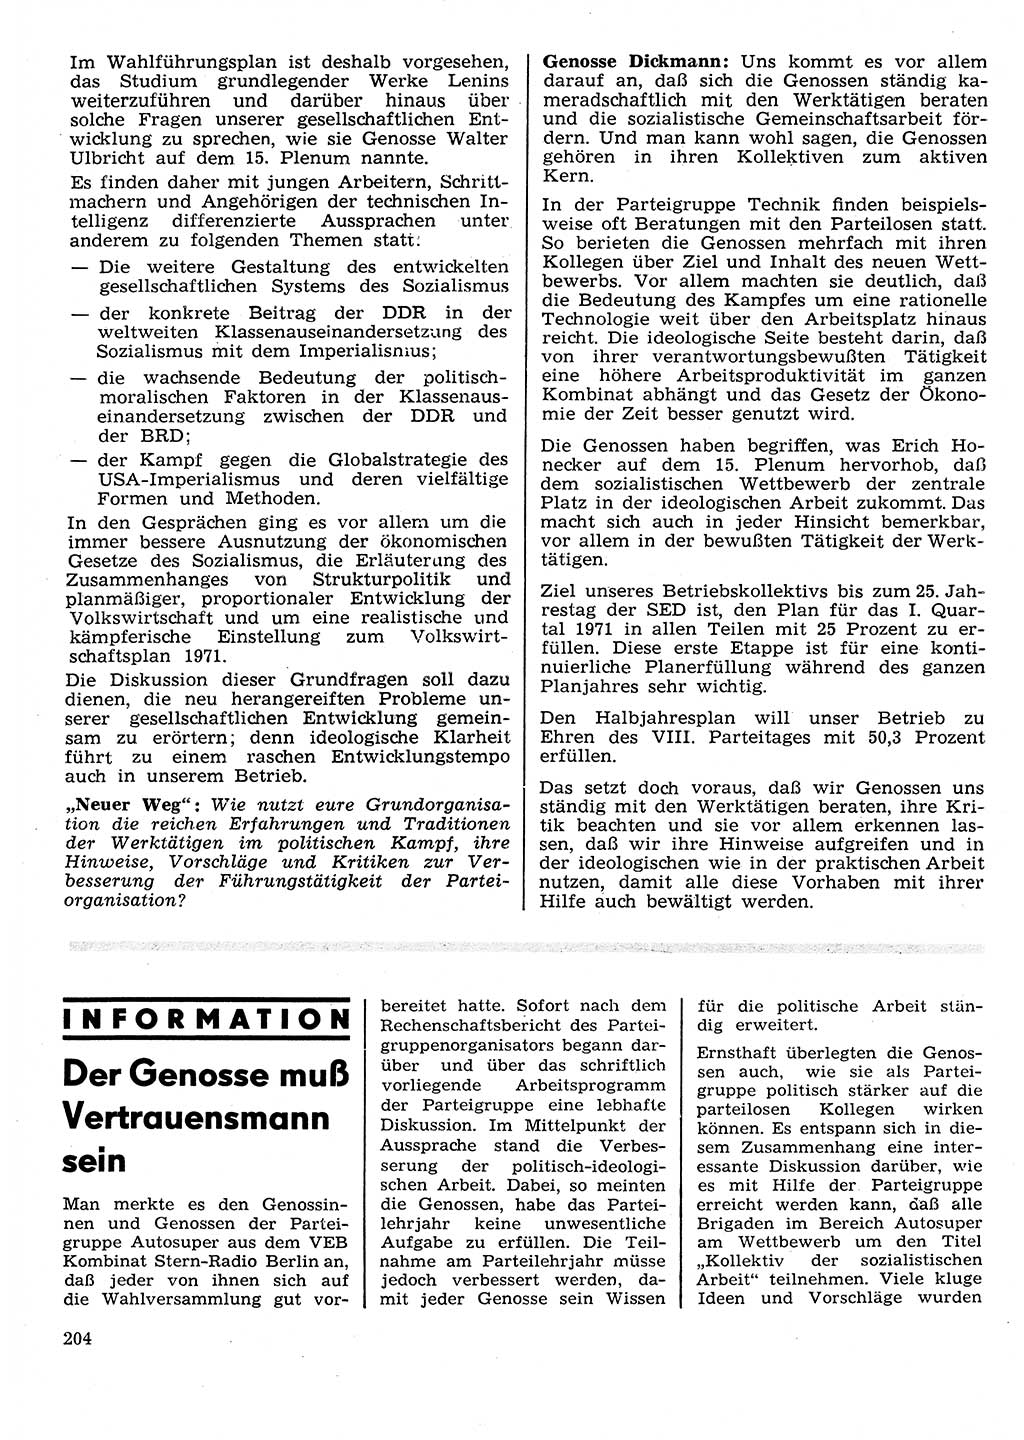 Neuer Weg (NW), Organ des Zentralkomitees (ZK) der SED (Sozialistische Einheitspartei Deutschlands) für Fragen des Parteilebens, 26. Jahrgang [Deutsche Demokratische Republik (DDR)] 1971, Seite 204 (NW ZK SED DDR 1971, S. 204)